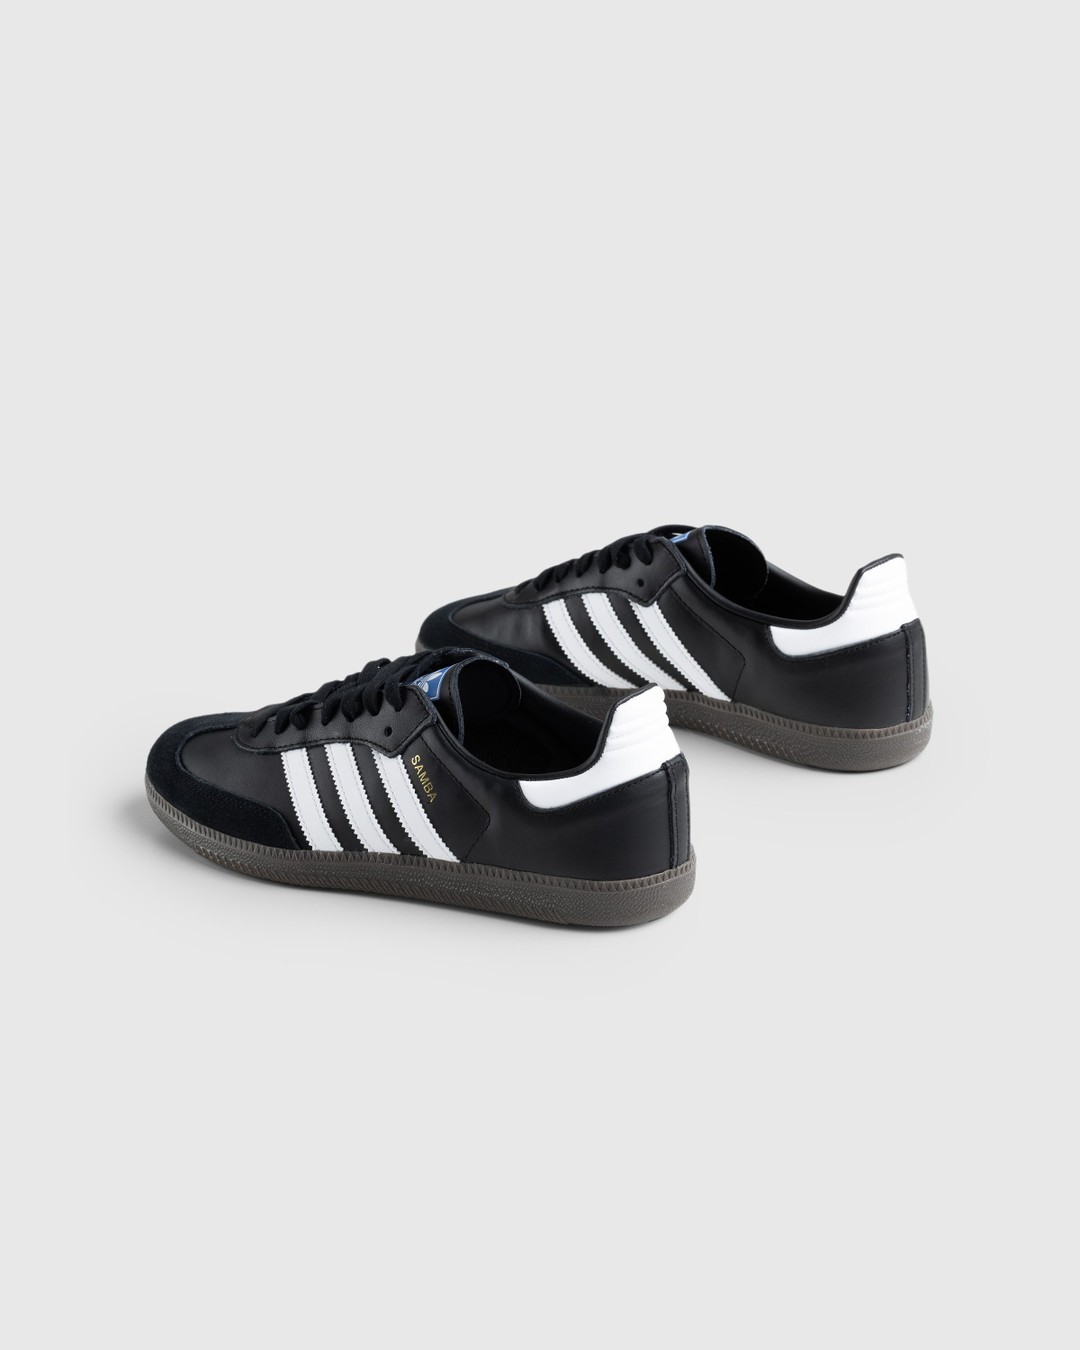 Adidas – Samba OG Black/White/Gum | Highsnobiety Shop